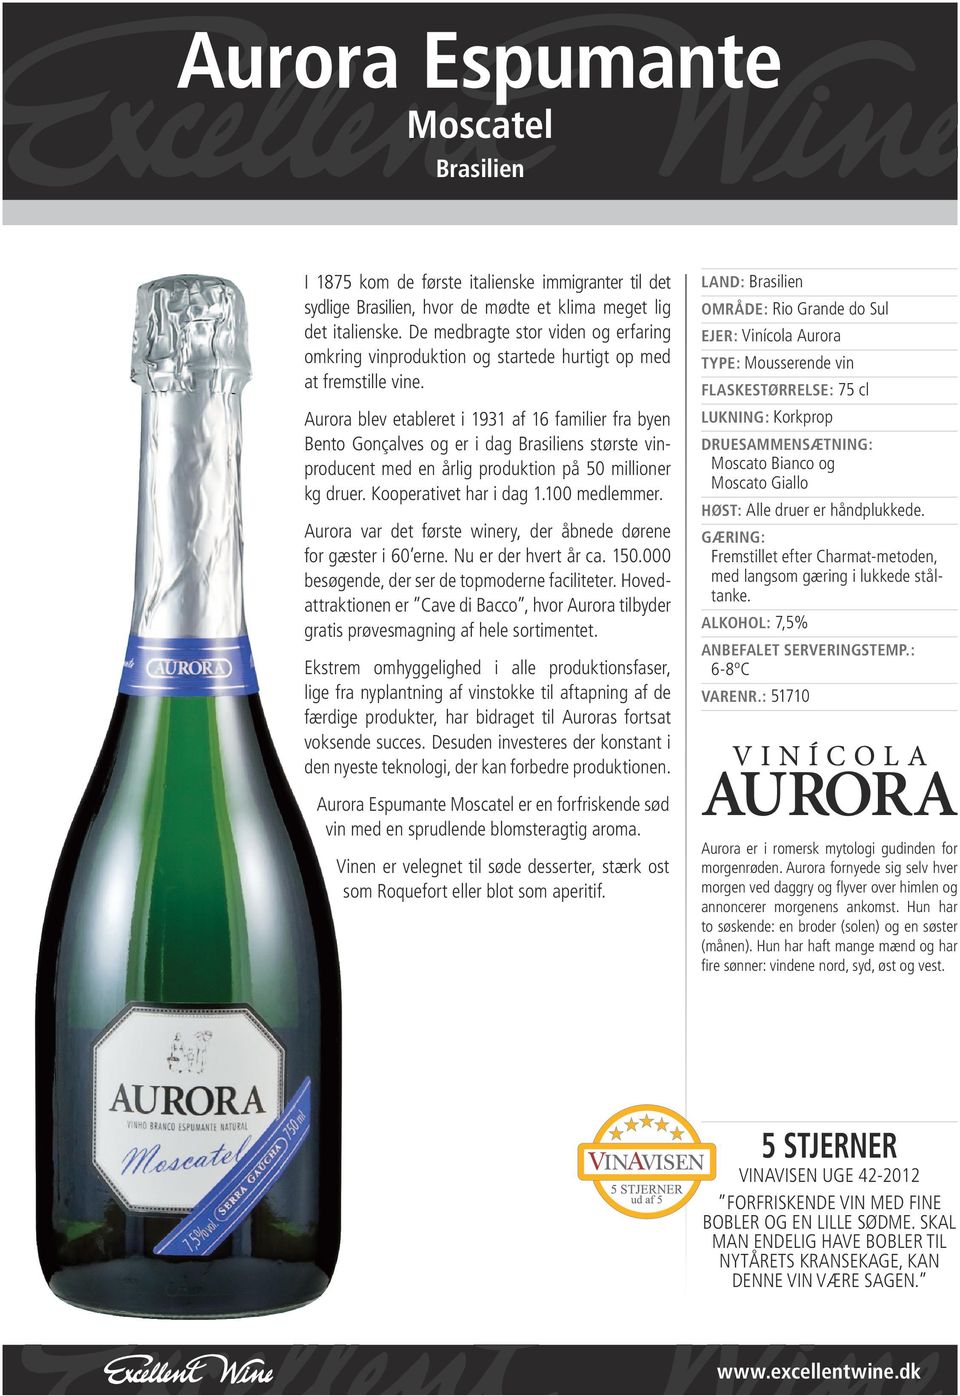 Aurora blev etableret i 1931 af 16 familier fra byen Bento Gonçalves og er i dag Brasiliens største vinproducent med en årlig produktion på 50 millioner kg druer. Kooperativet har i dag 1.